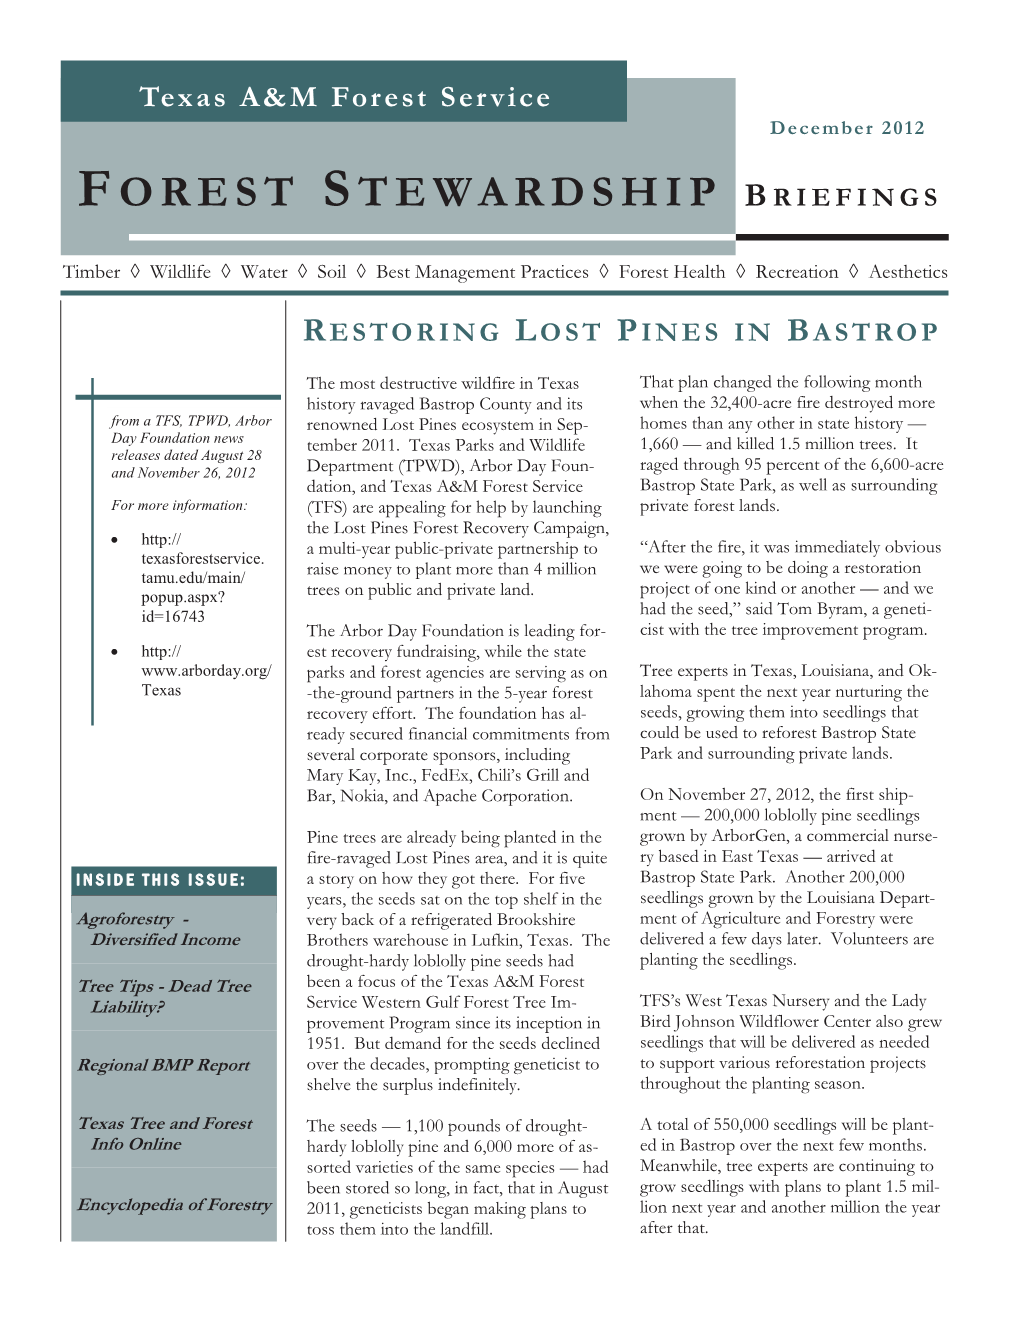 Forest Stewardship Briefings